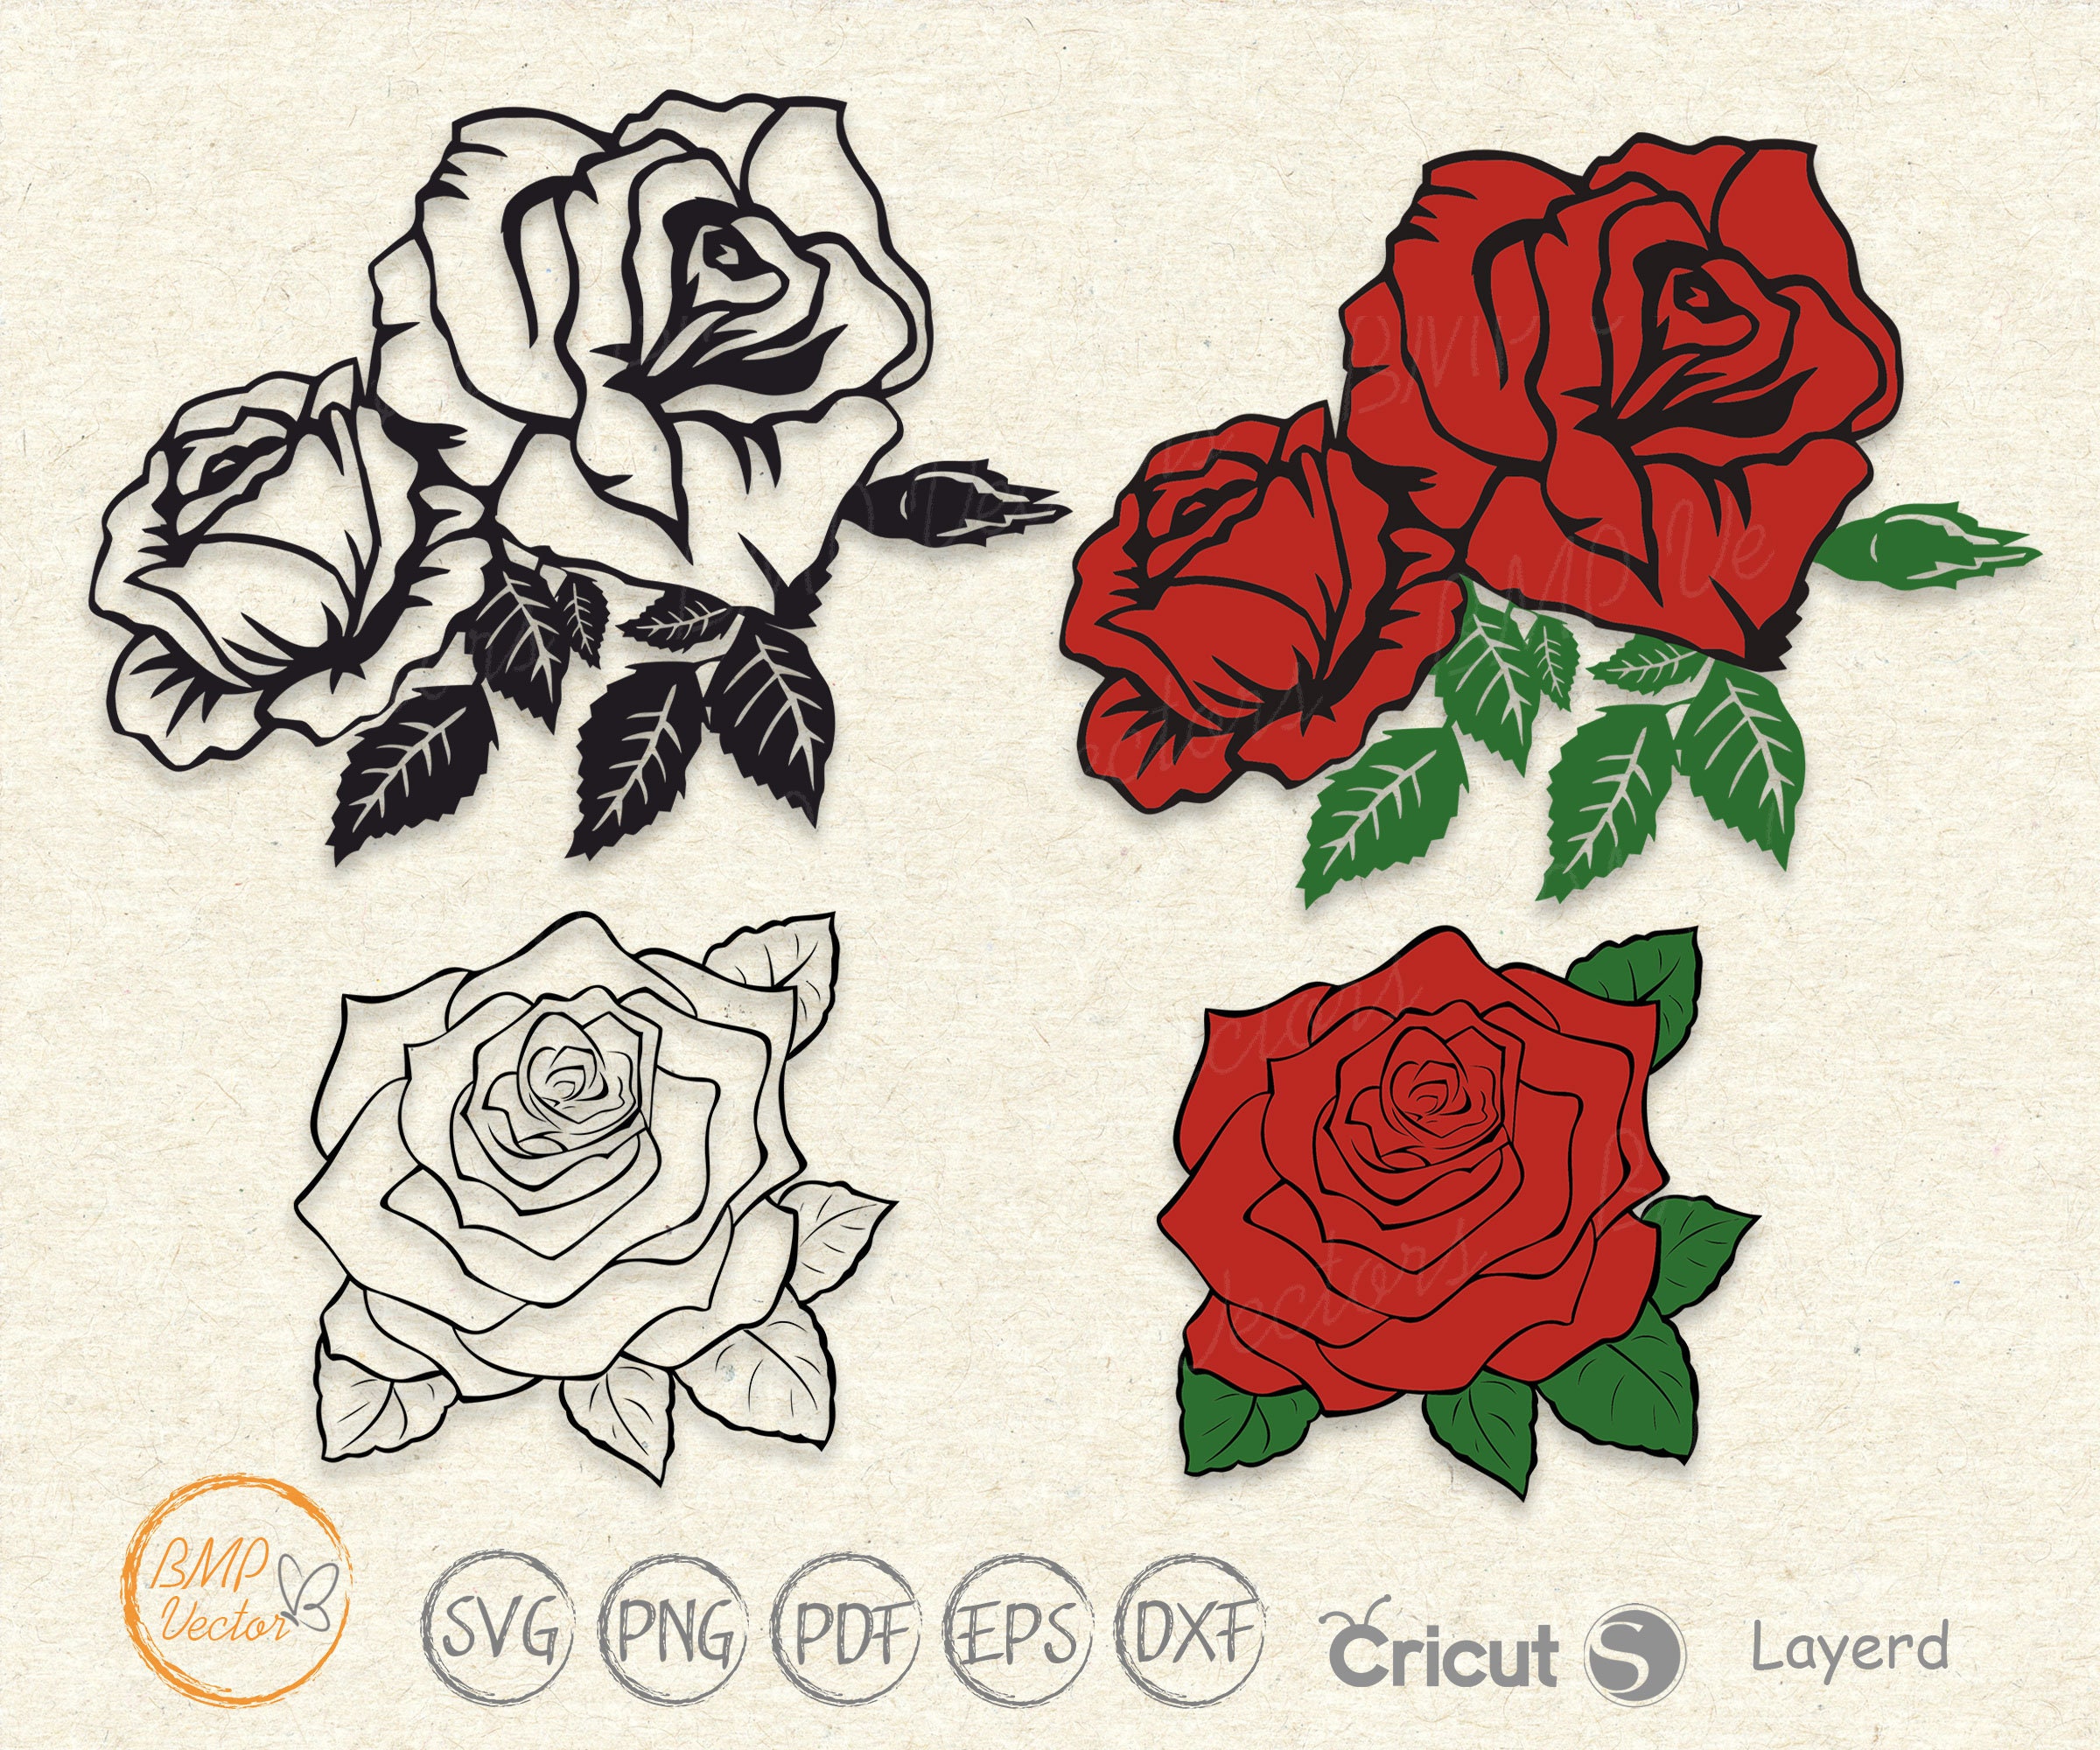 Red Rose SVG Bundle, Flower Svg, Monogram Svg